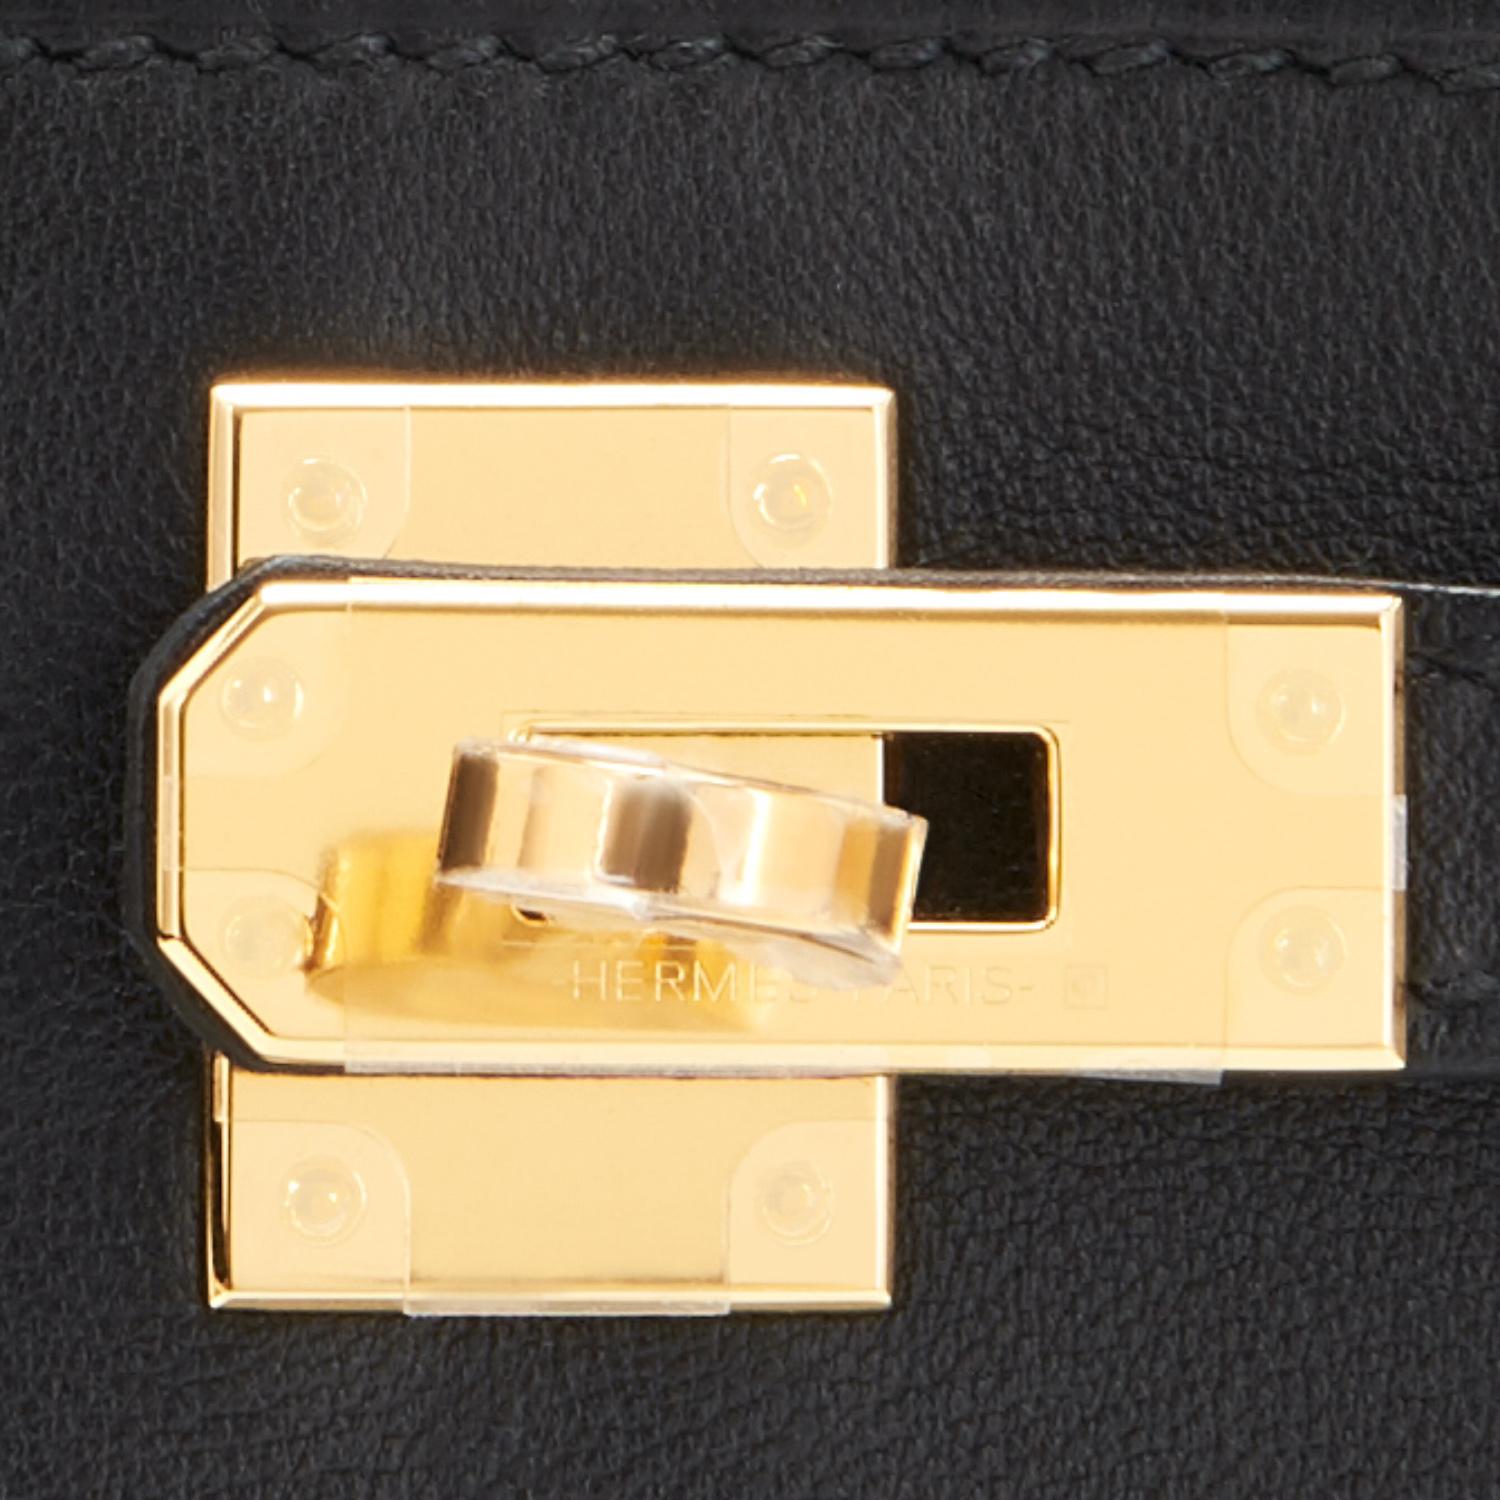 Pochette Kelly d'Hermès noire et dorée avec finitions métalliques et pochette découpée, estampillée Z, 2021  2